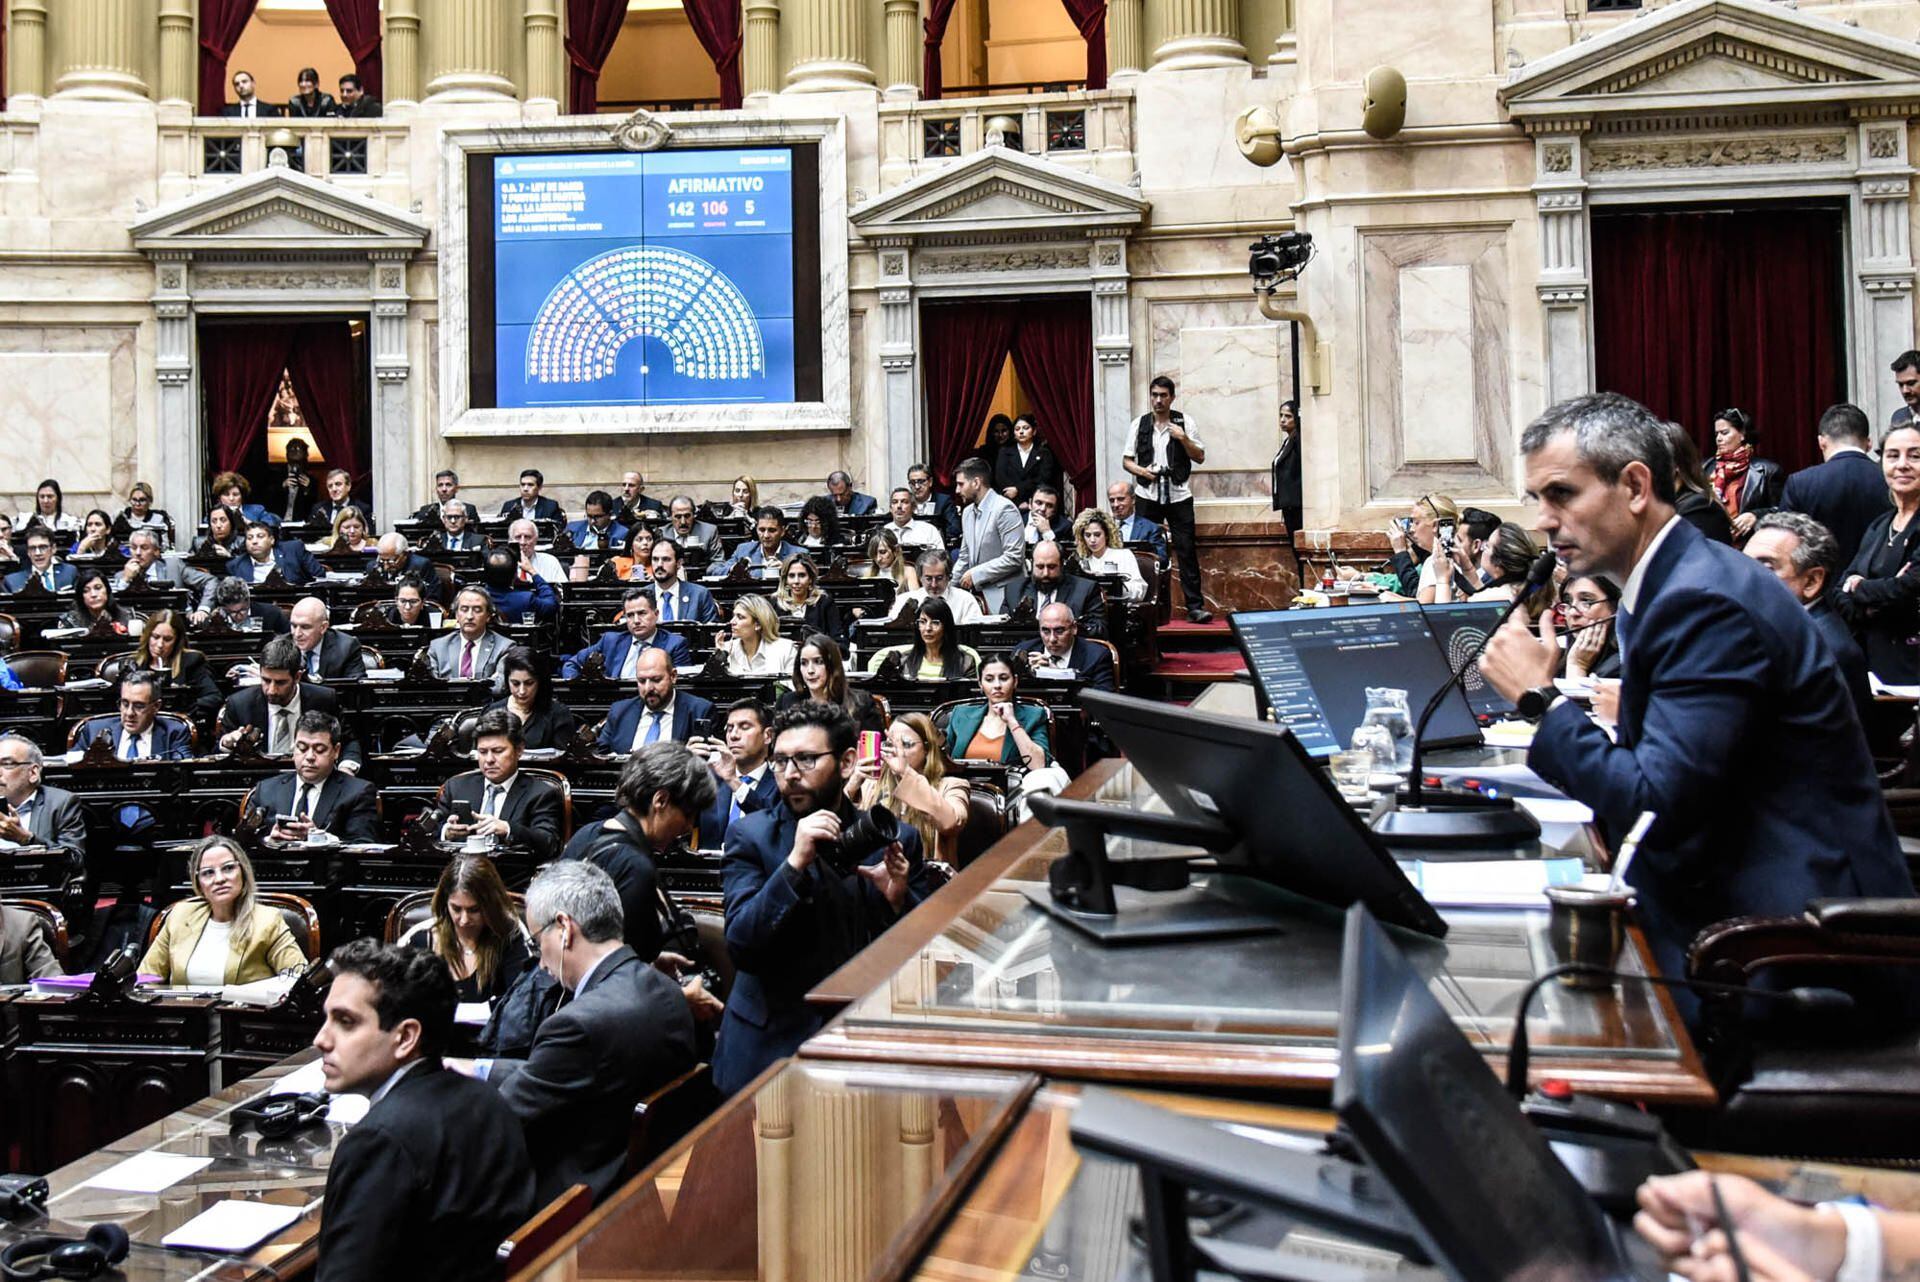 El presidente de la Cámara de Diputados de Argentina, Martín Menem, anuncia el resultado de la votación del proyecto en general de la Ley Bases y Puntos de Partida para la Libertad de los Argentinos, más conocida como 'ley ómnibus', impulsada por Javier Milei. (EFE).